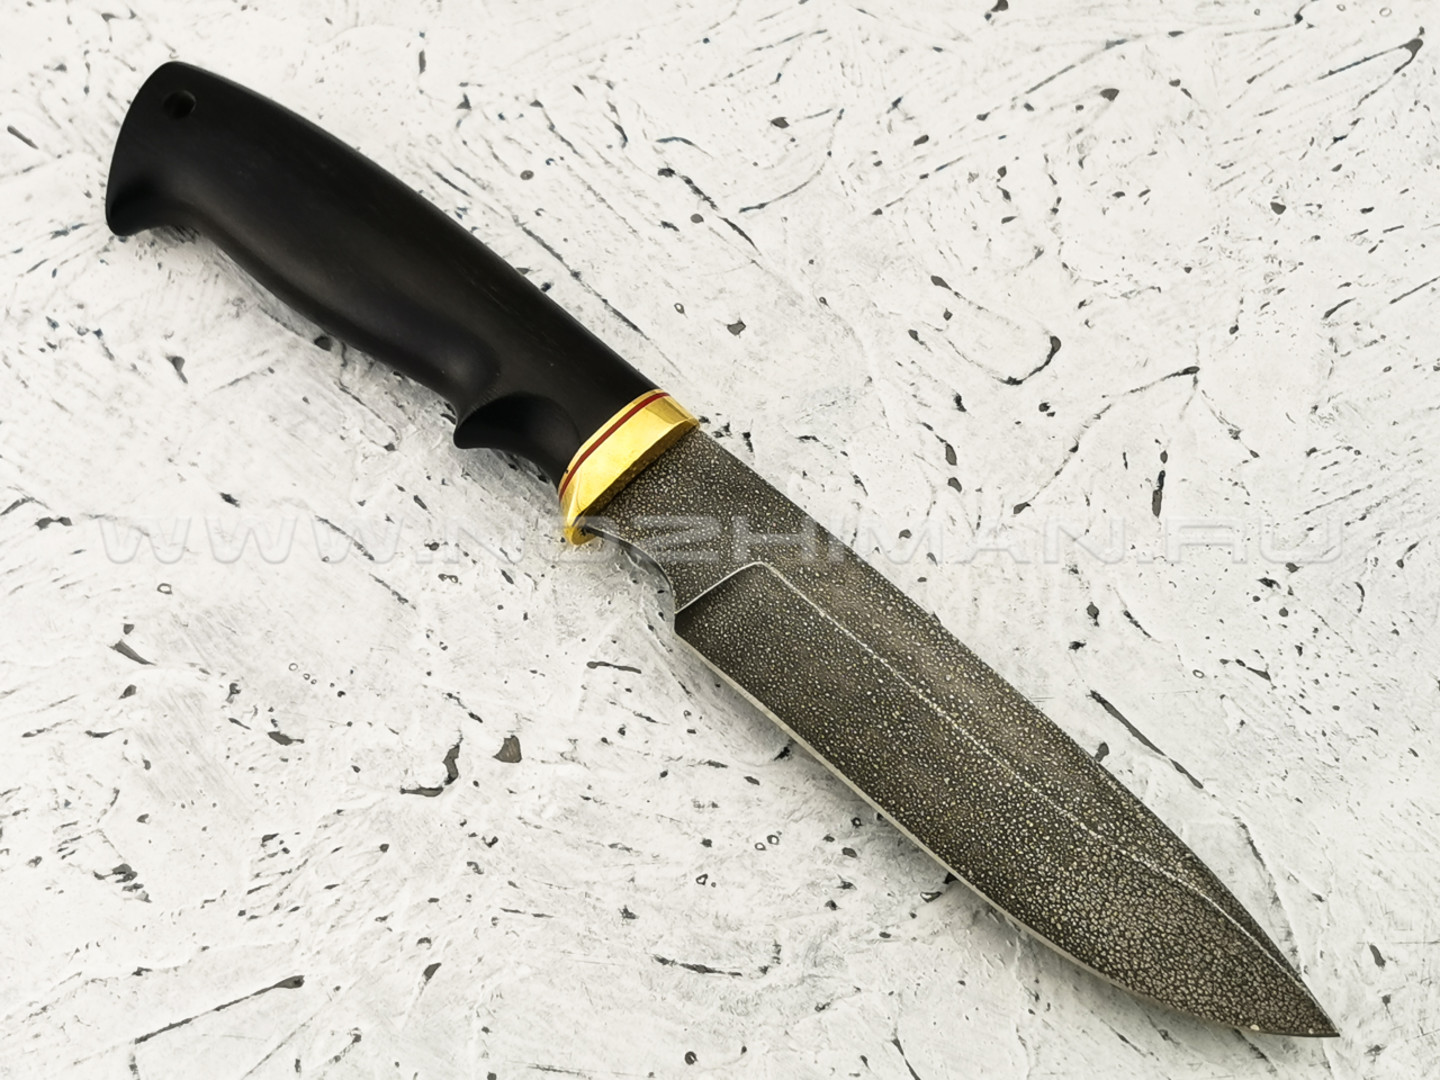 Нож "Лось" сталь ХВ5, рукоять граб (Тов. Завьялова)